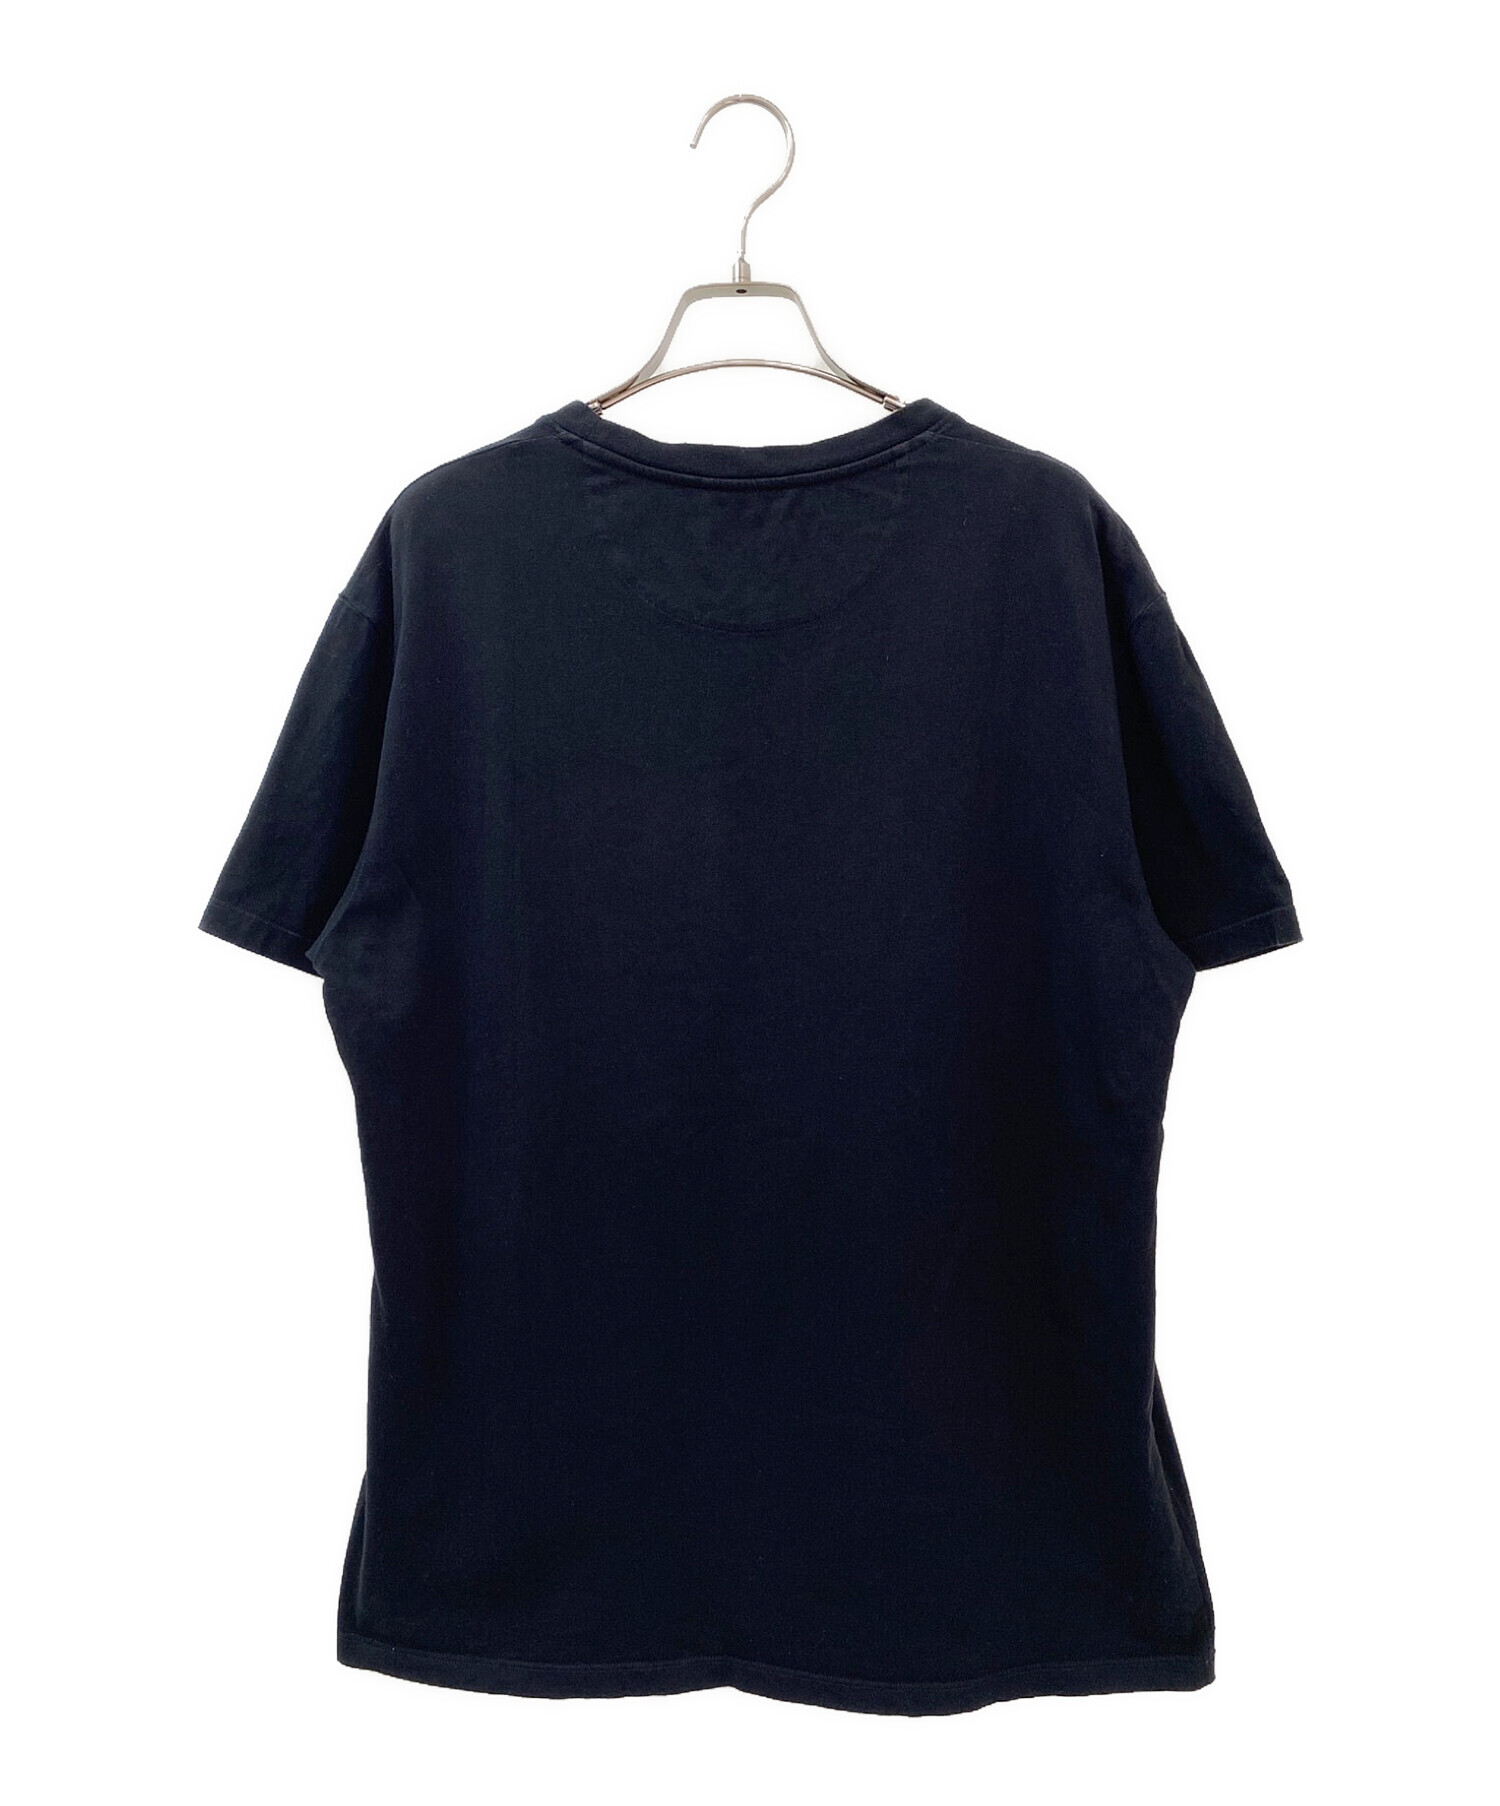 VALENTINO (ヴァレンティノ) VLTNロゴTシャツ ブラック サイズ:M